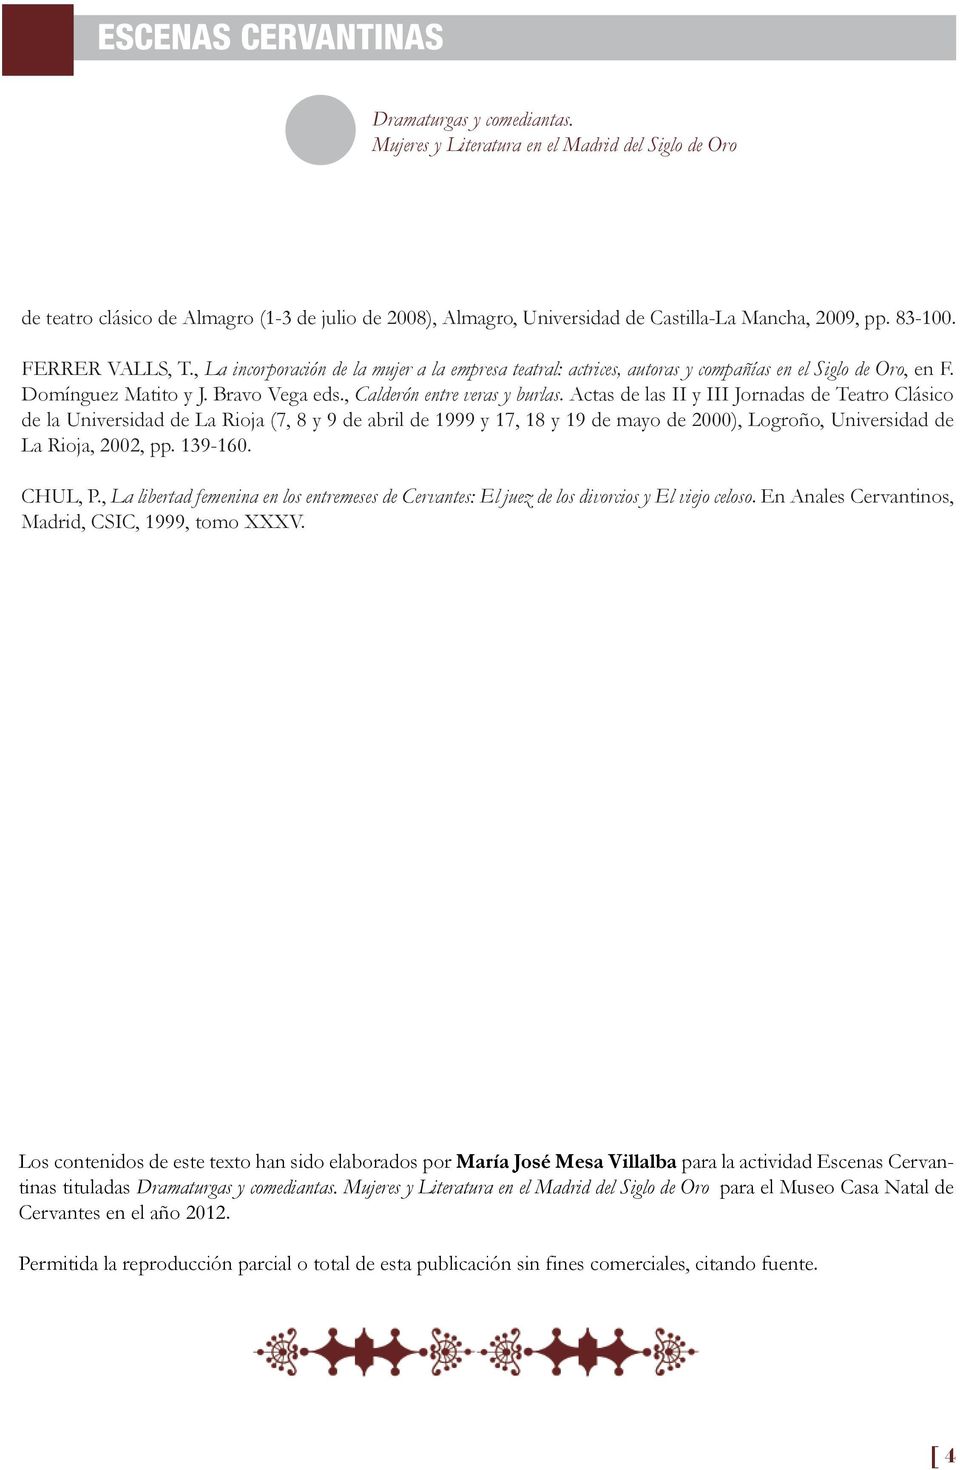 Actas de las II y III Jornadas de Teatro Clásico de la Universidad de La Rioja (7, 8 y 9 de abril de 1999 y 17, 18 y 19 de mayo de 2000), Logroño, Universidad de La Rioja, 2002, pp. 139-160. CHUL, P.